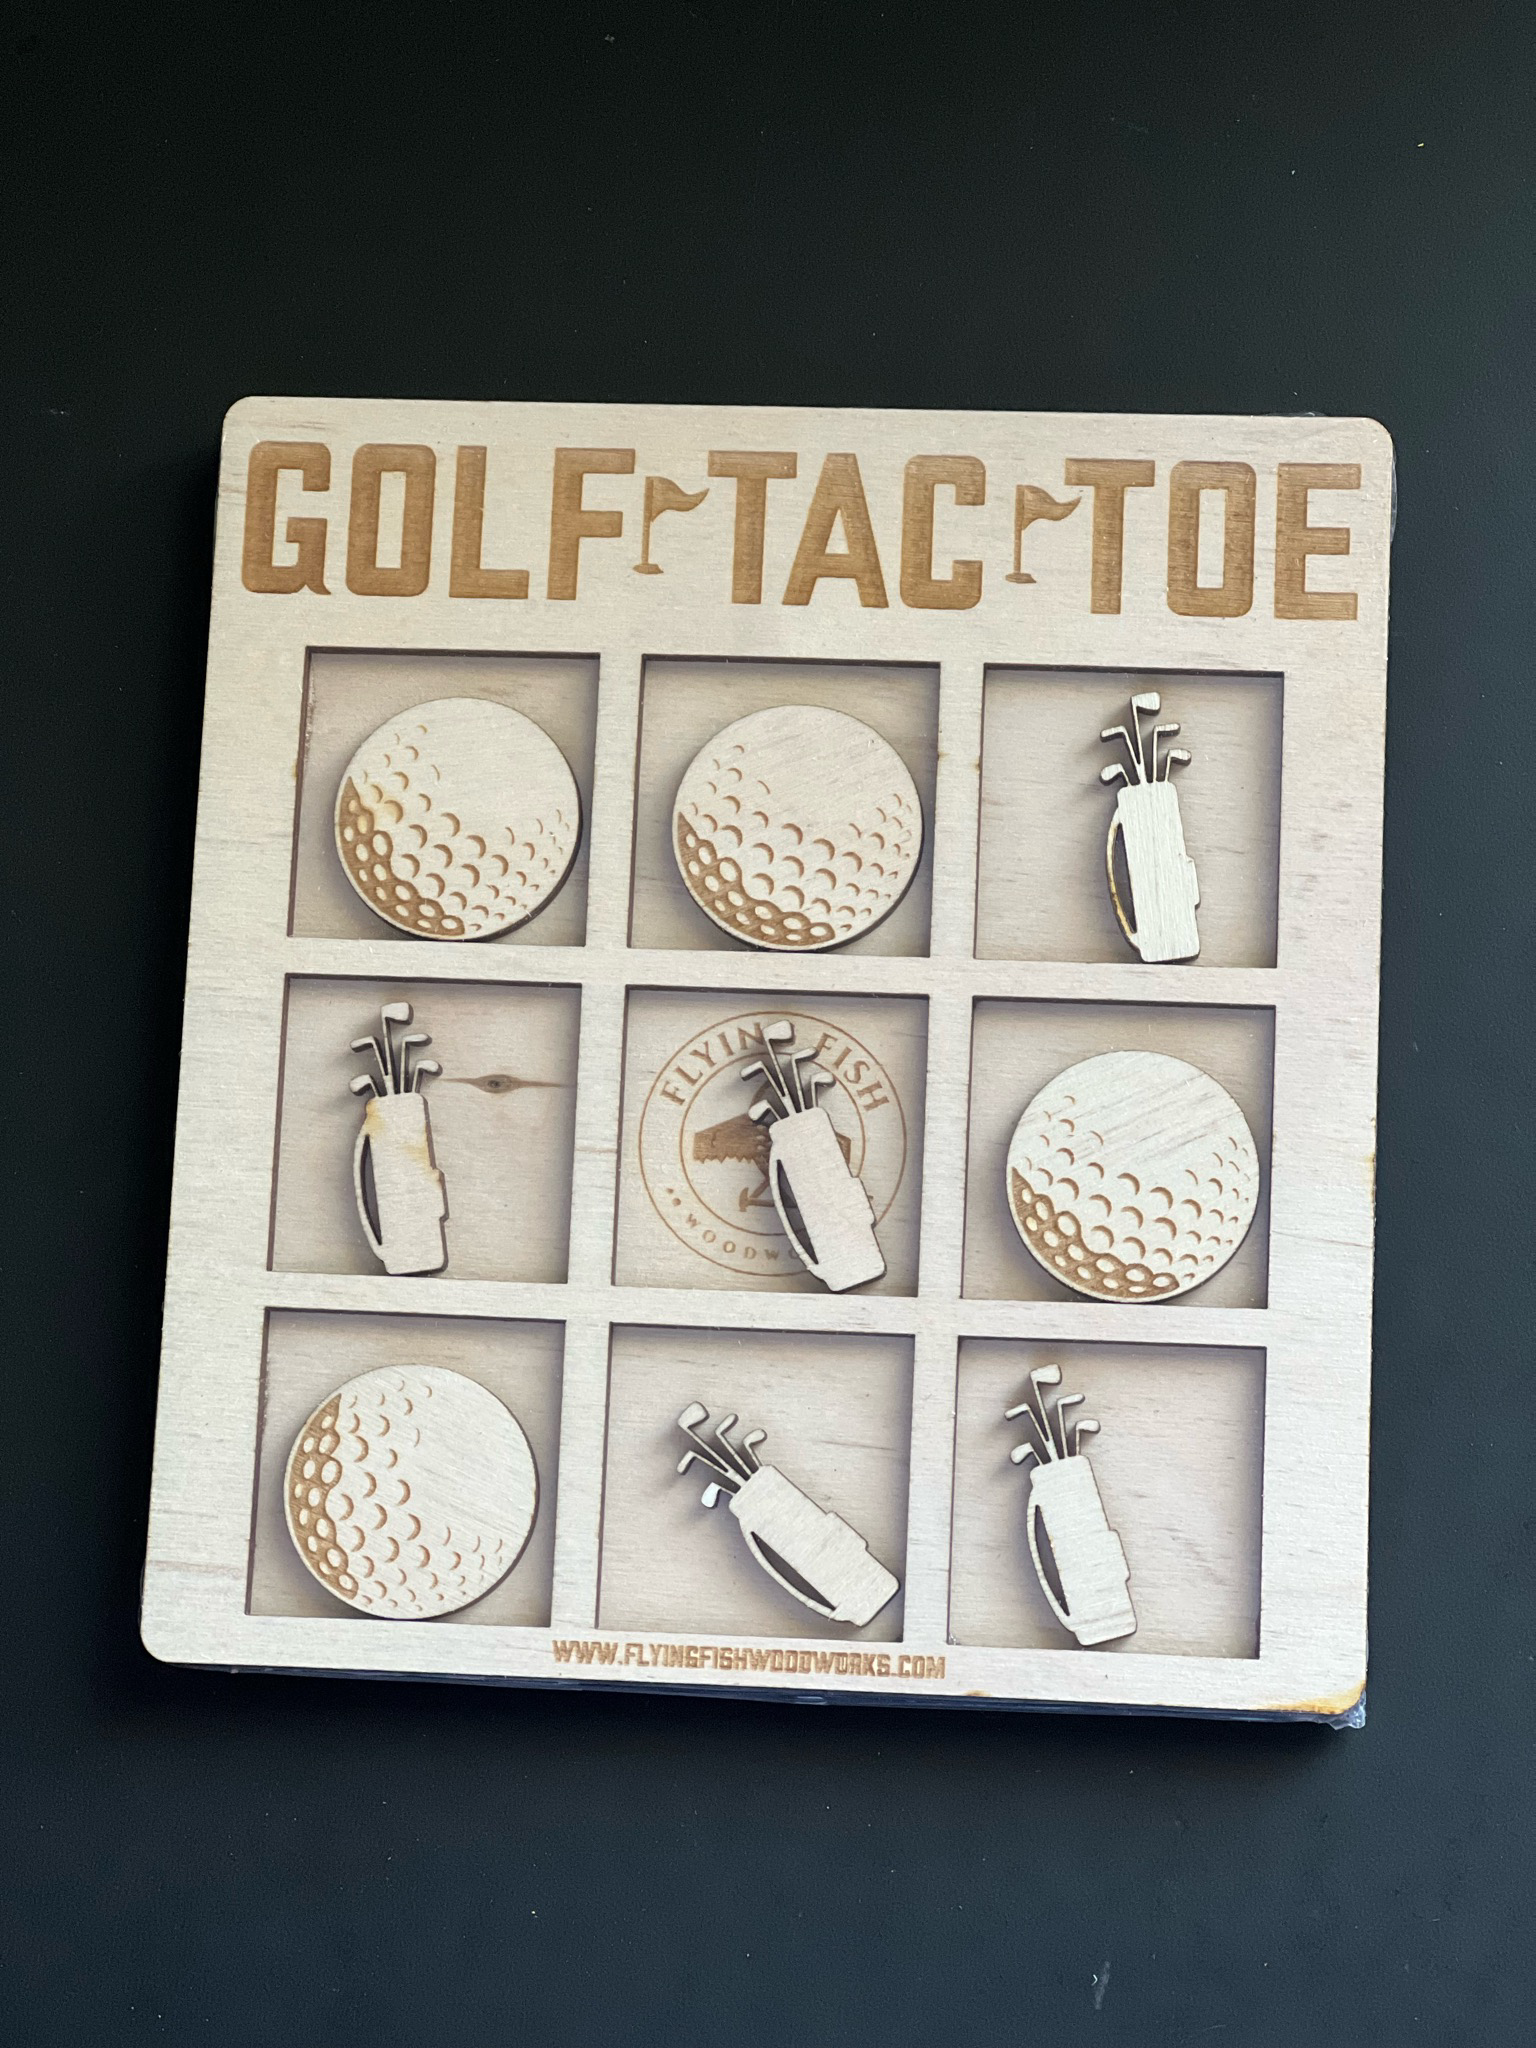 Tac-tac golf